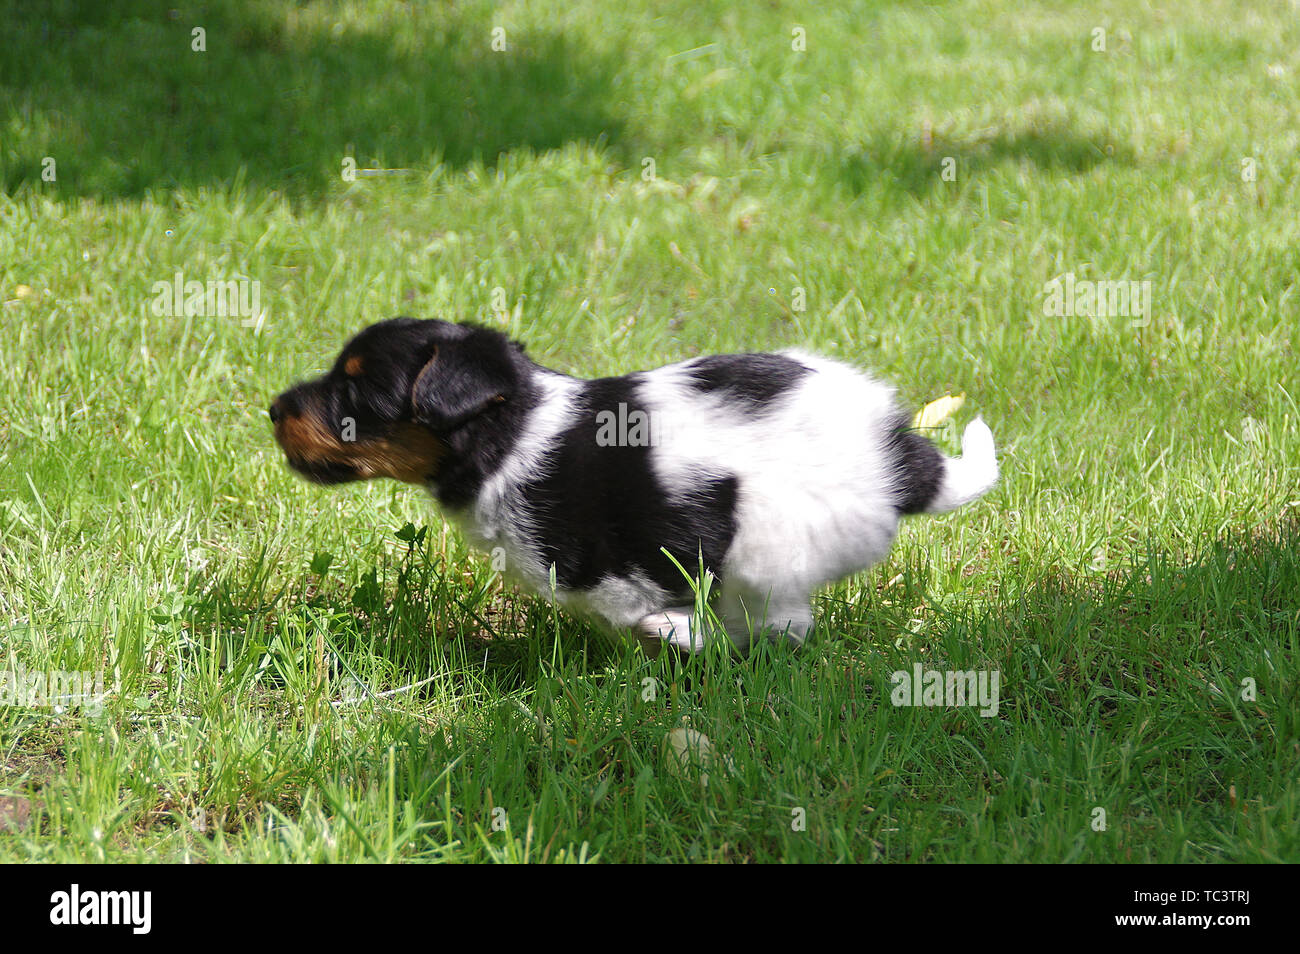 Il cucciolo è in esecuzione sull'erba. Il piccolo cane arriva a conoscere il mondo con curiosità. Giovane cacciatore. Foto Stock